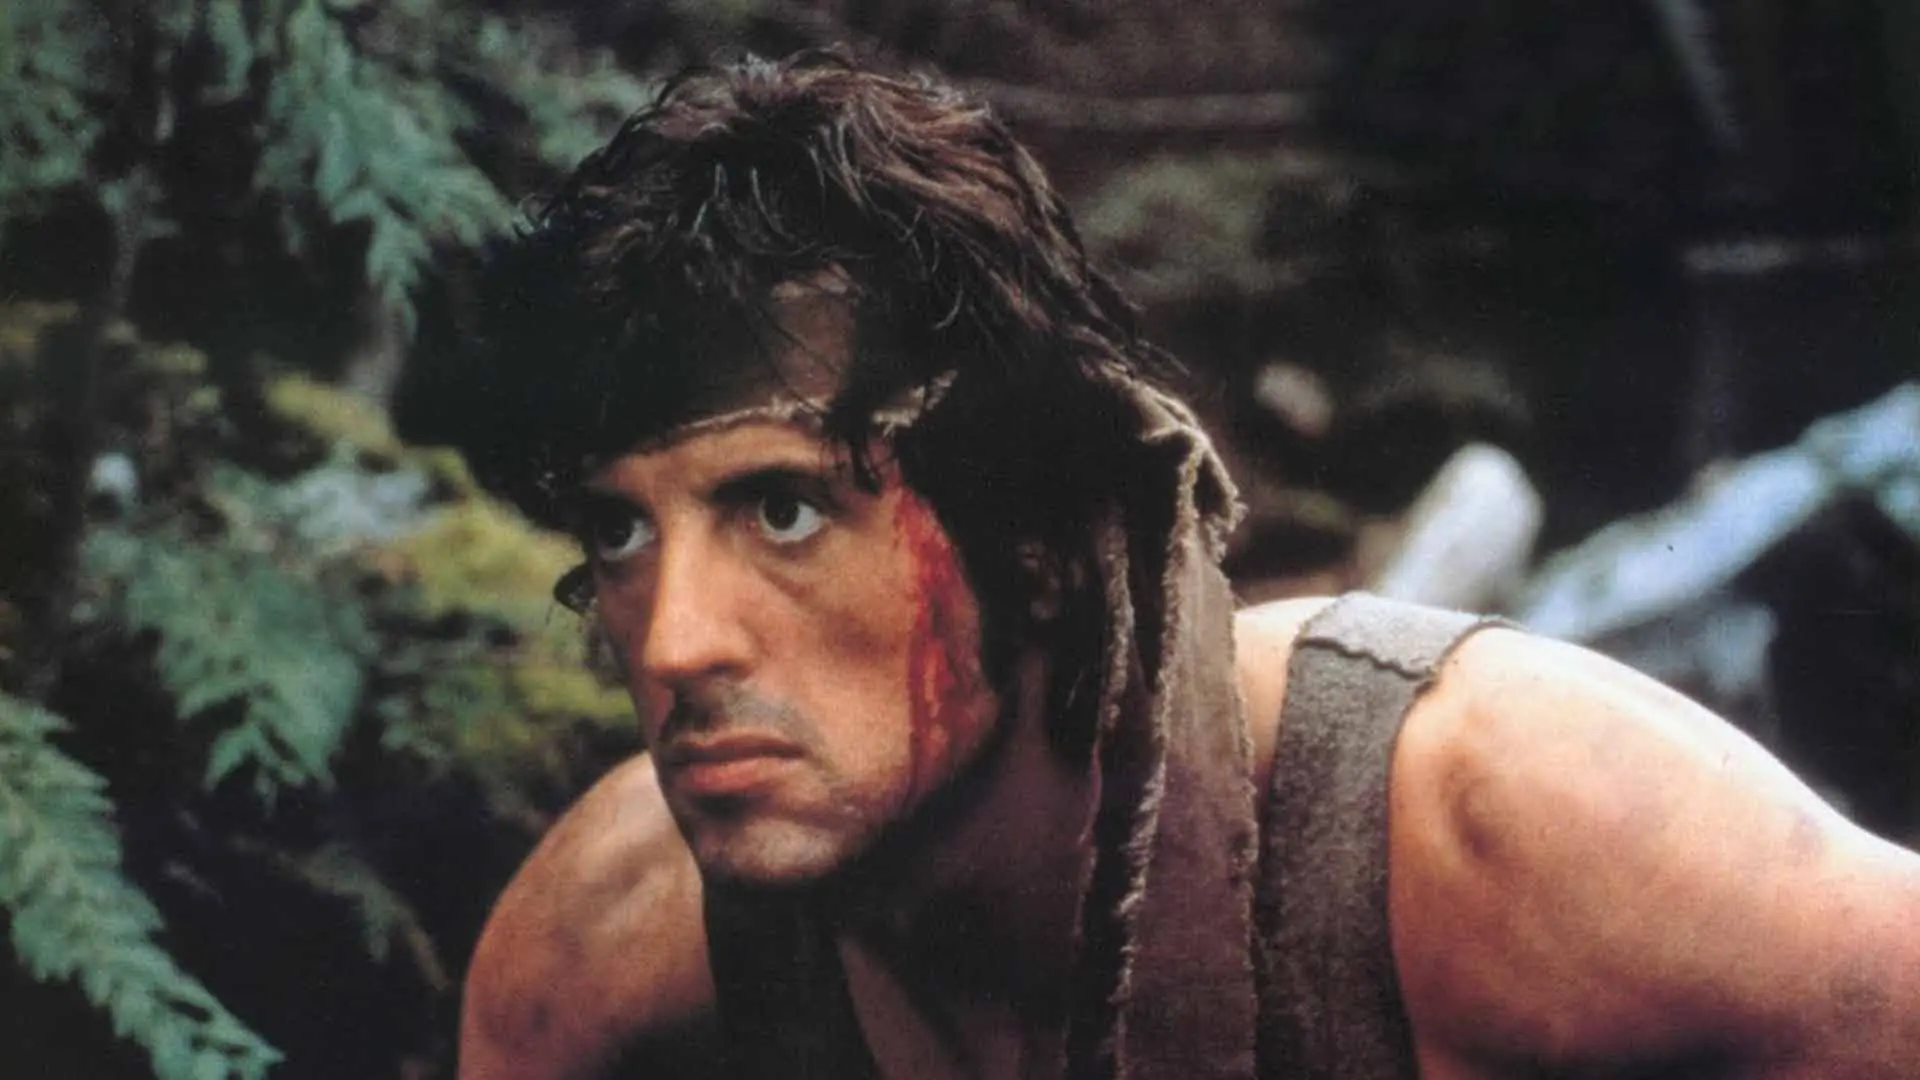 سیلوستر استالونه با صورتی خونی در جنگل در فیلم Rambo: First Blood